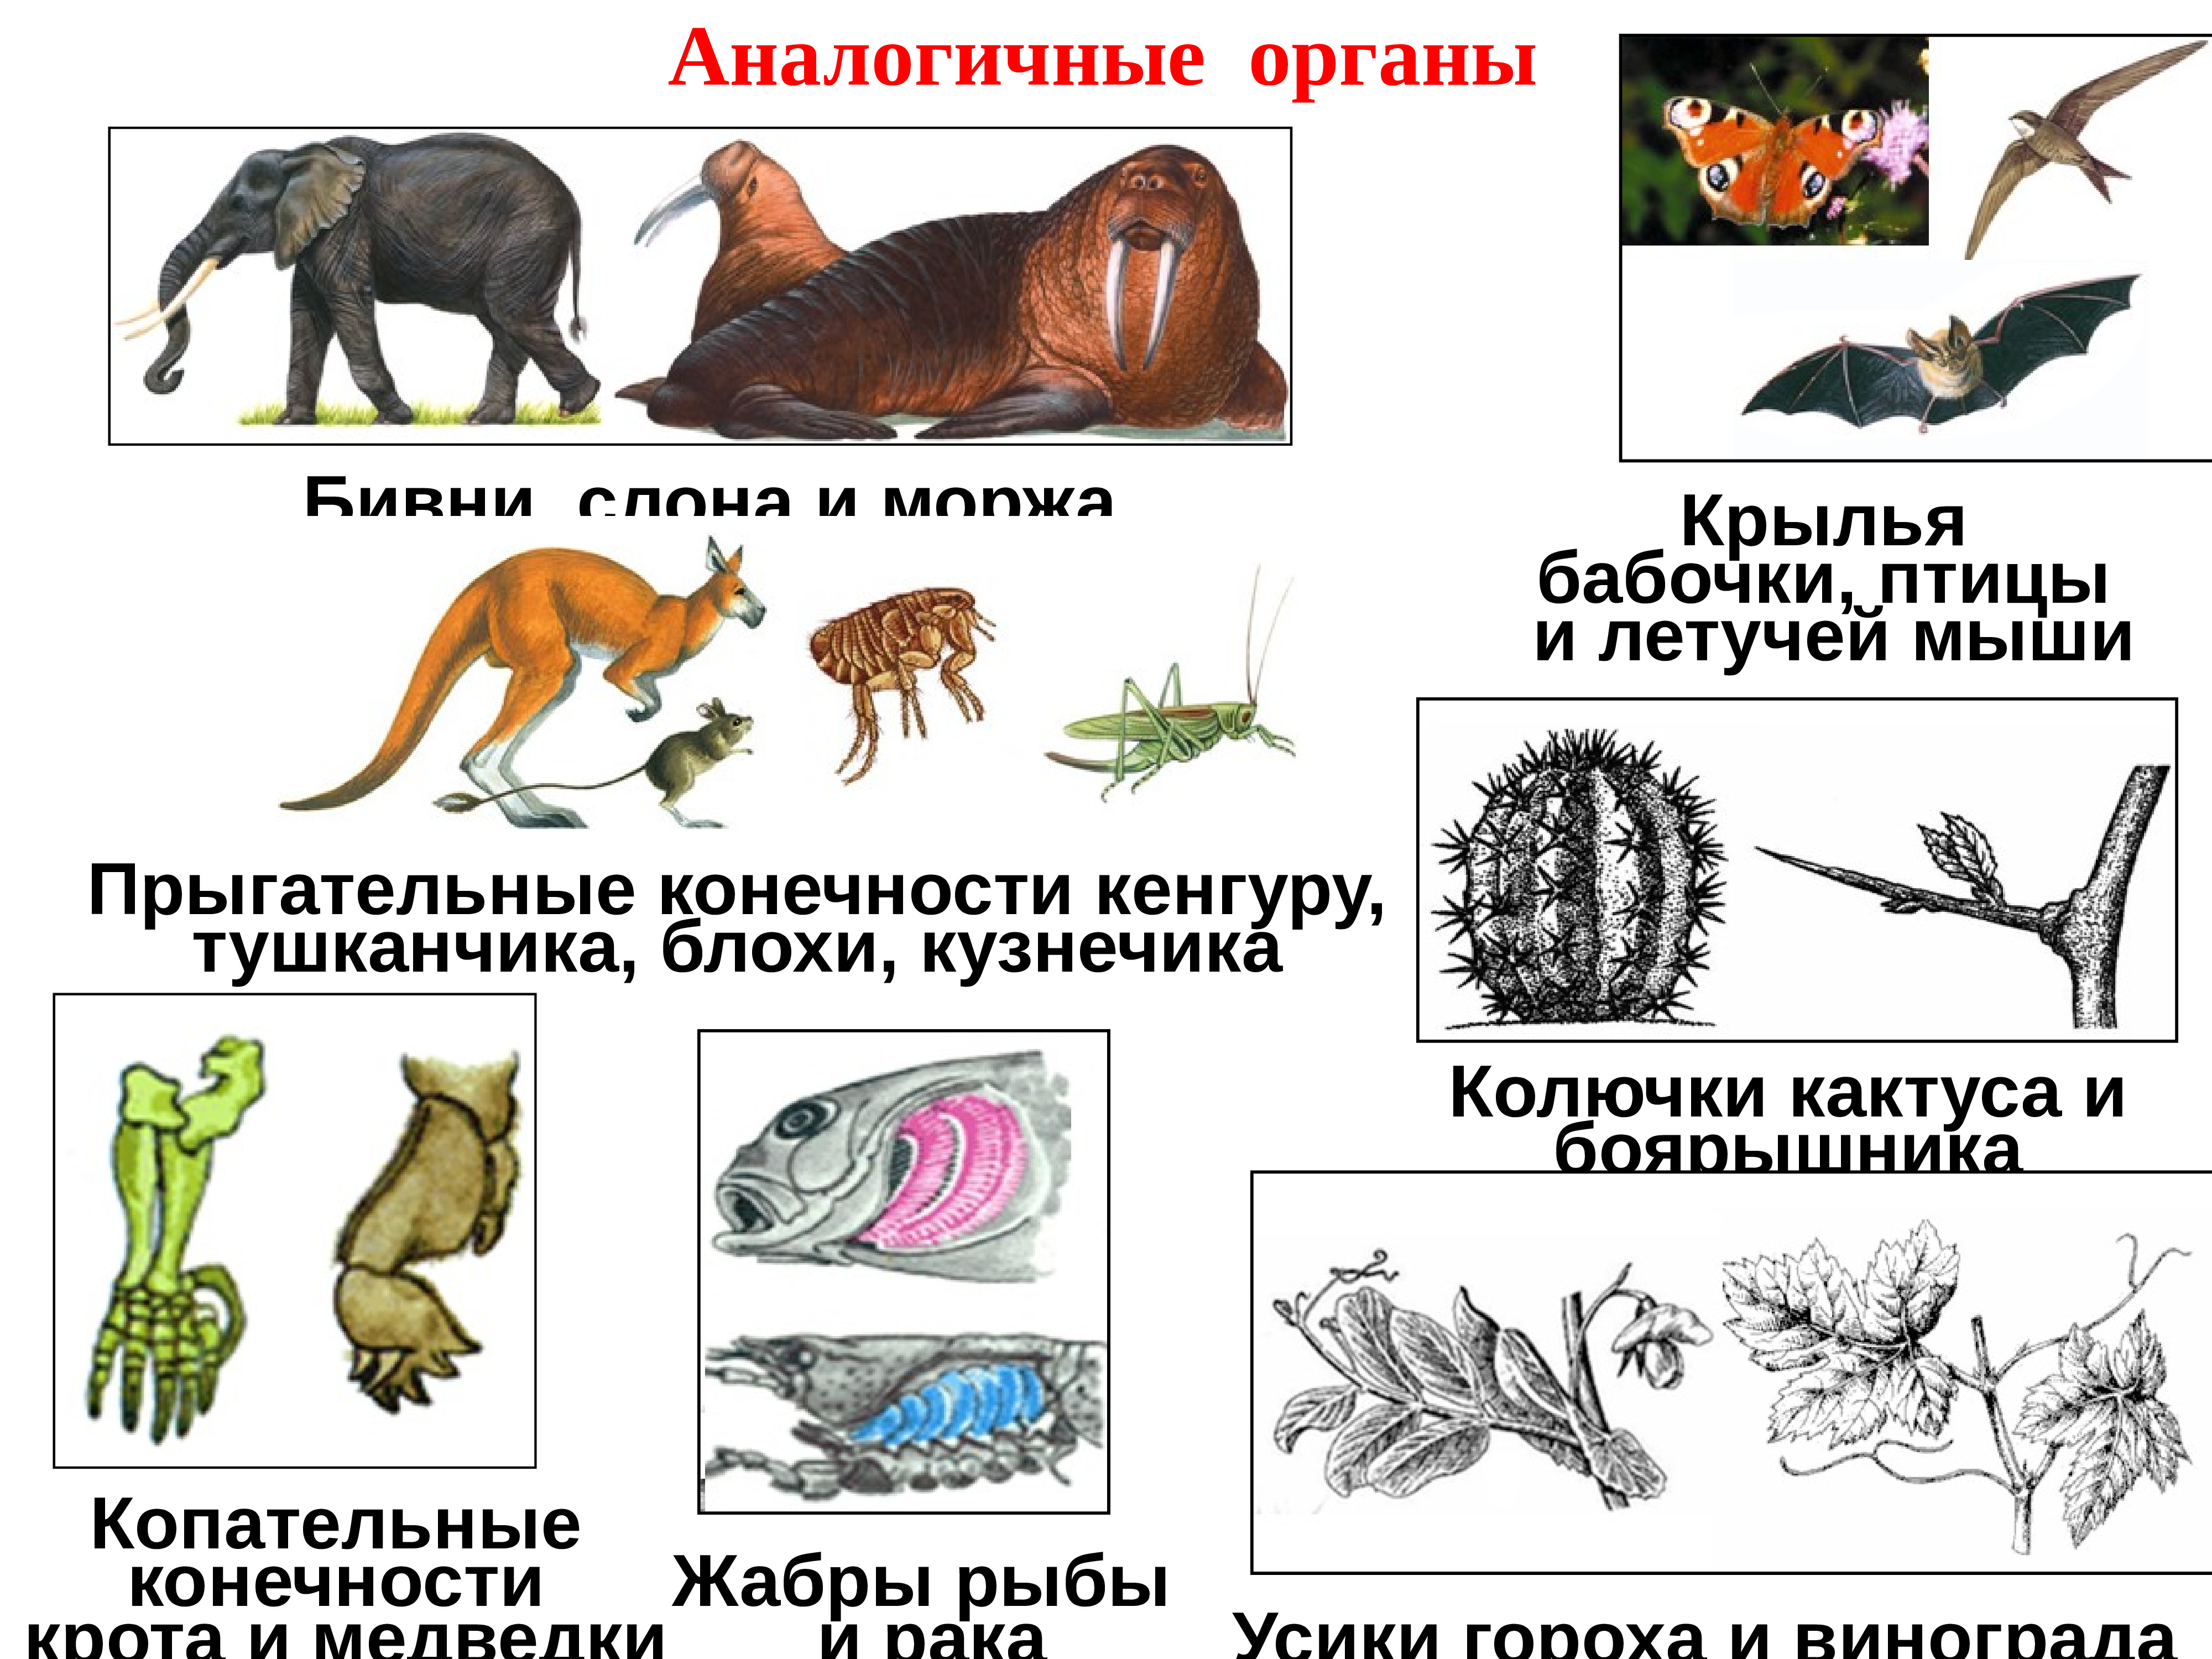 Аналогичные органы примеры у животных таблица